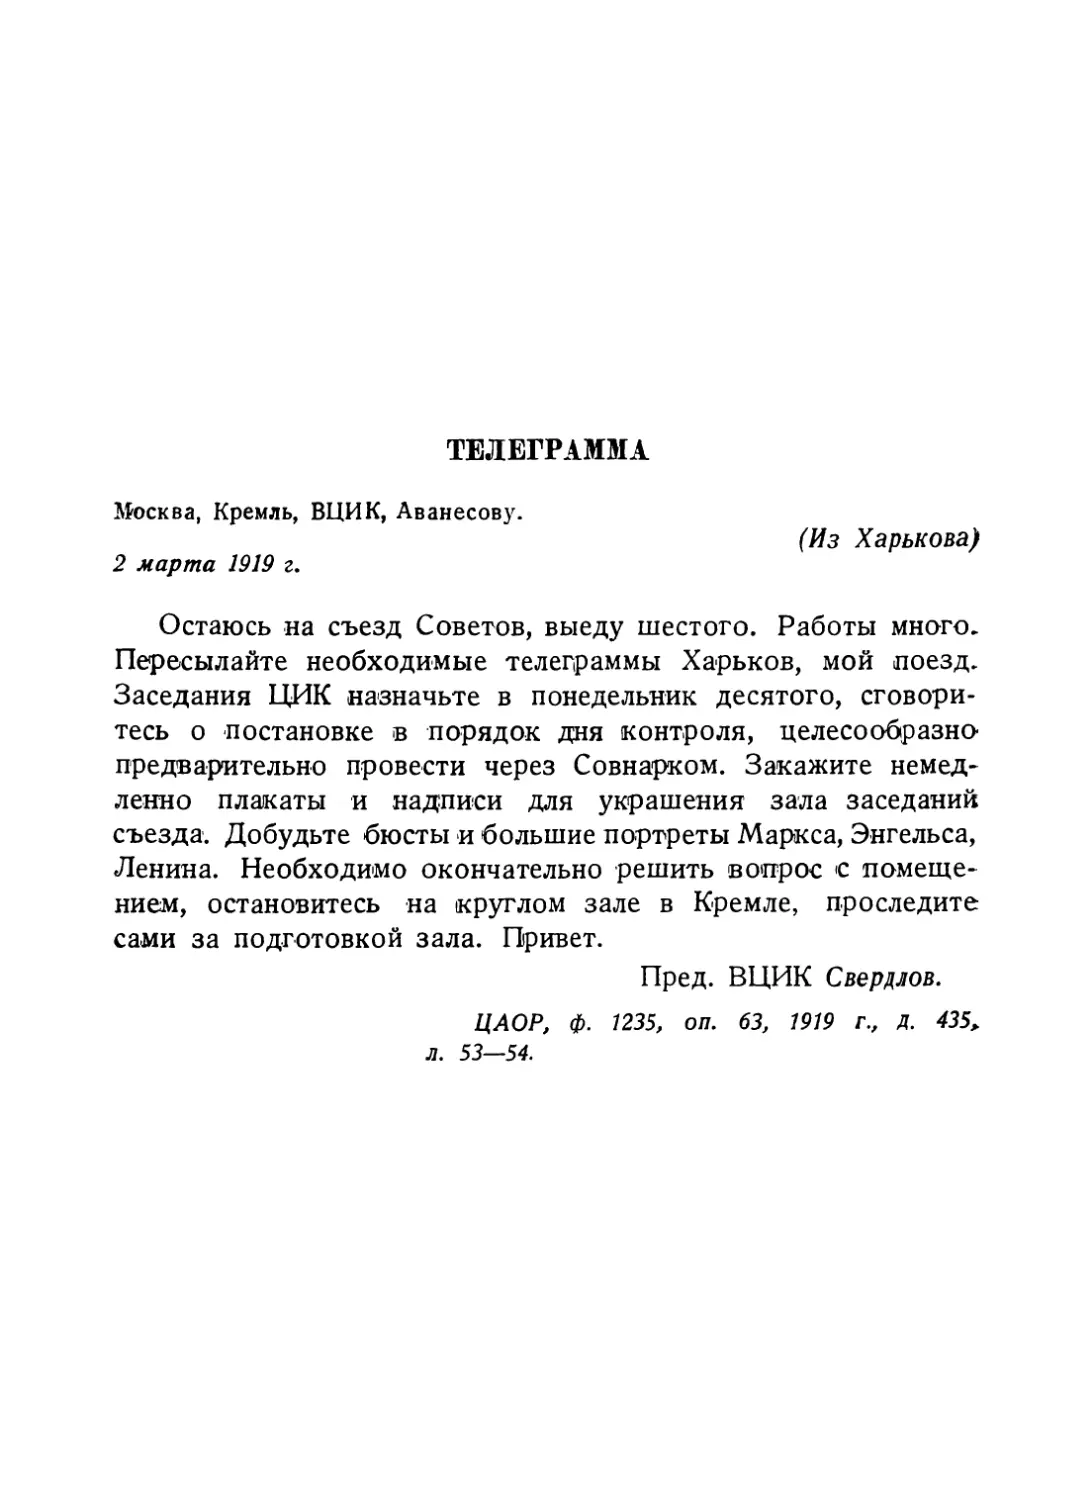 Телеграмма из Харькова Аванесову от 2 марта 1919 г